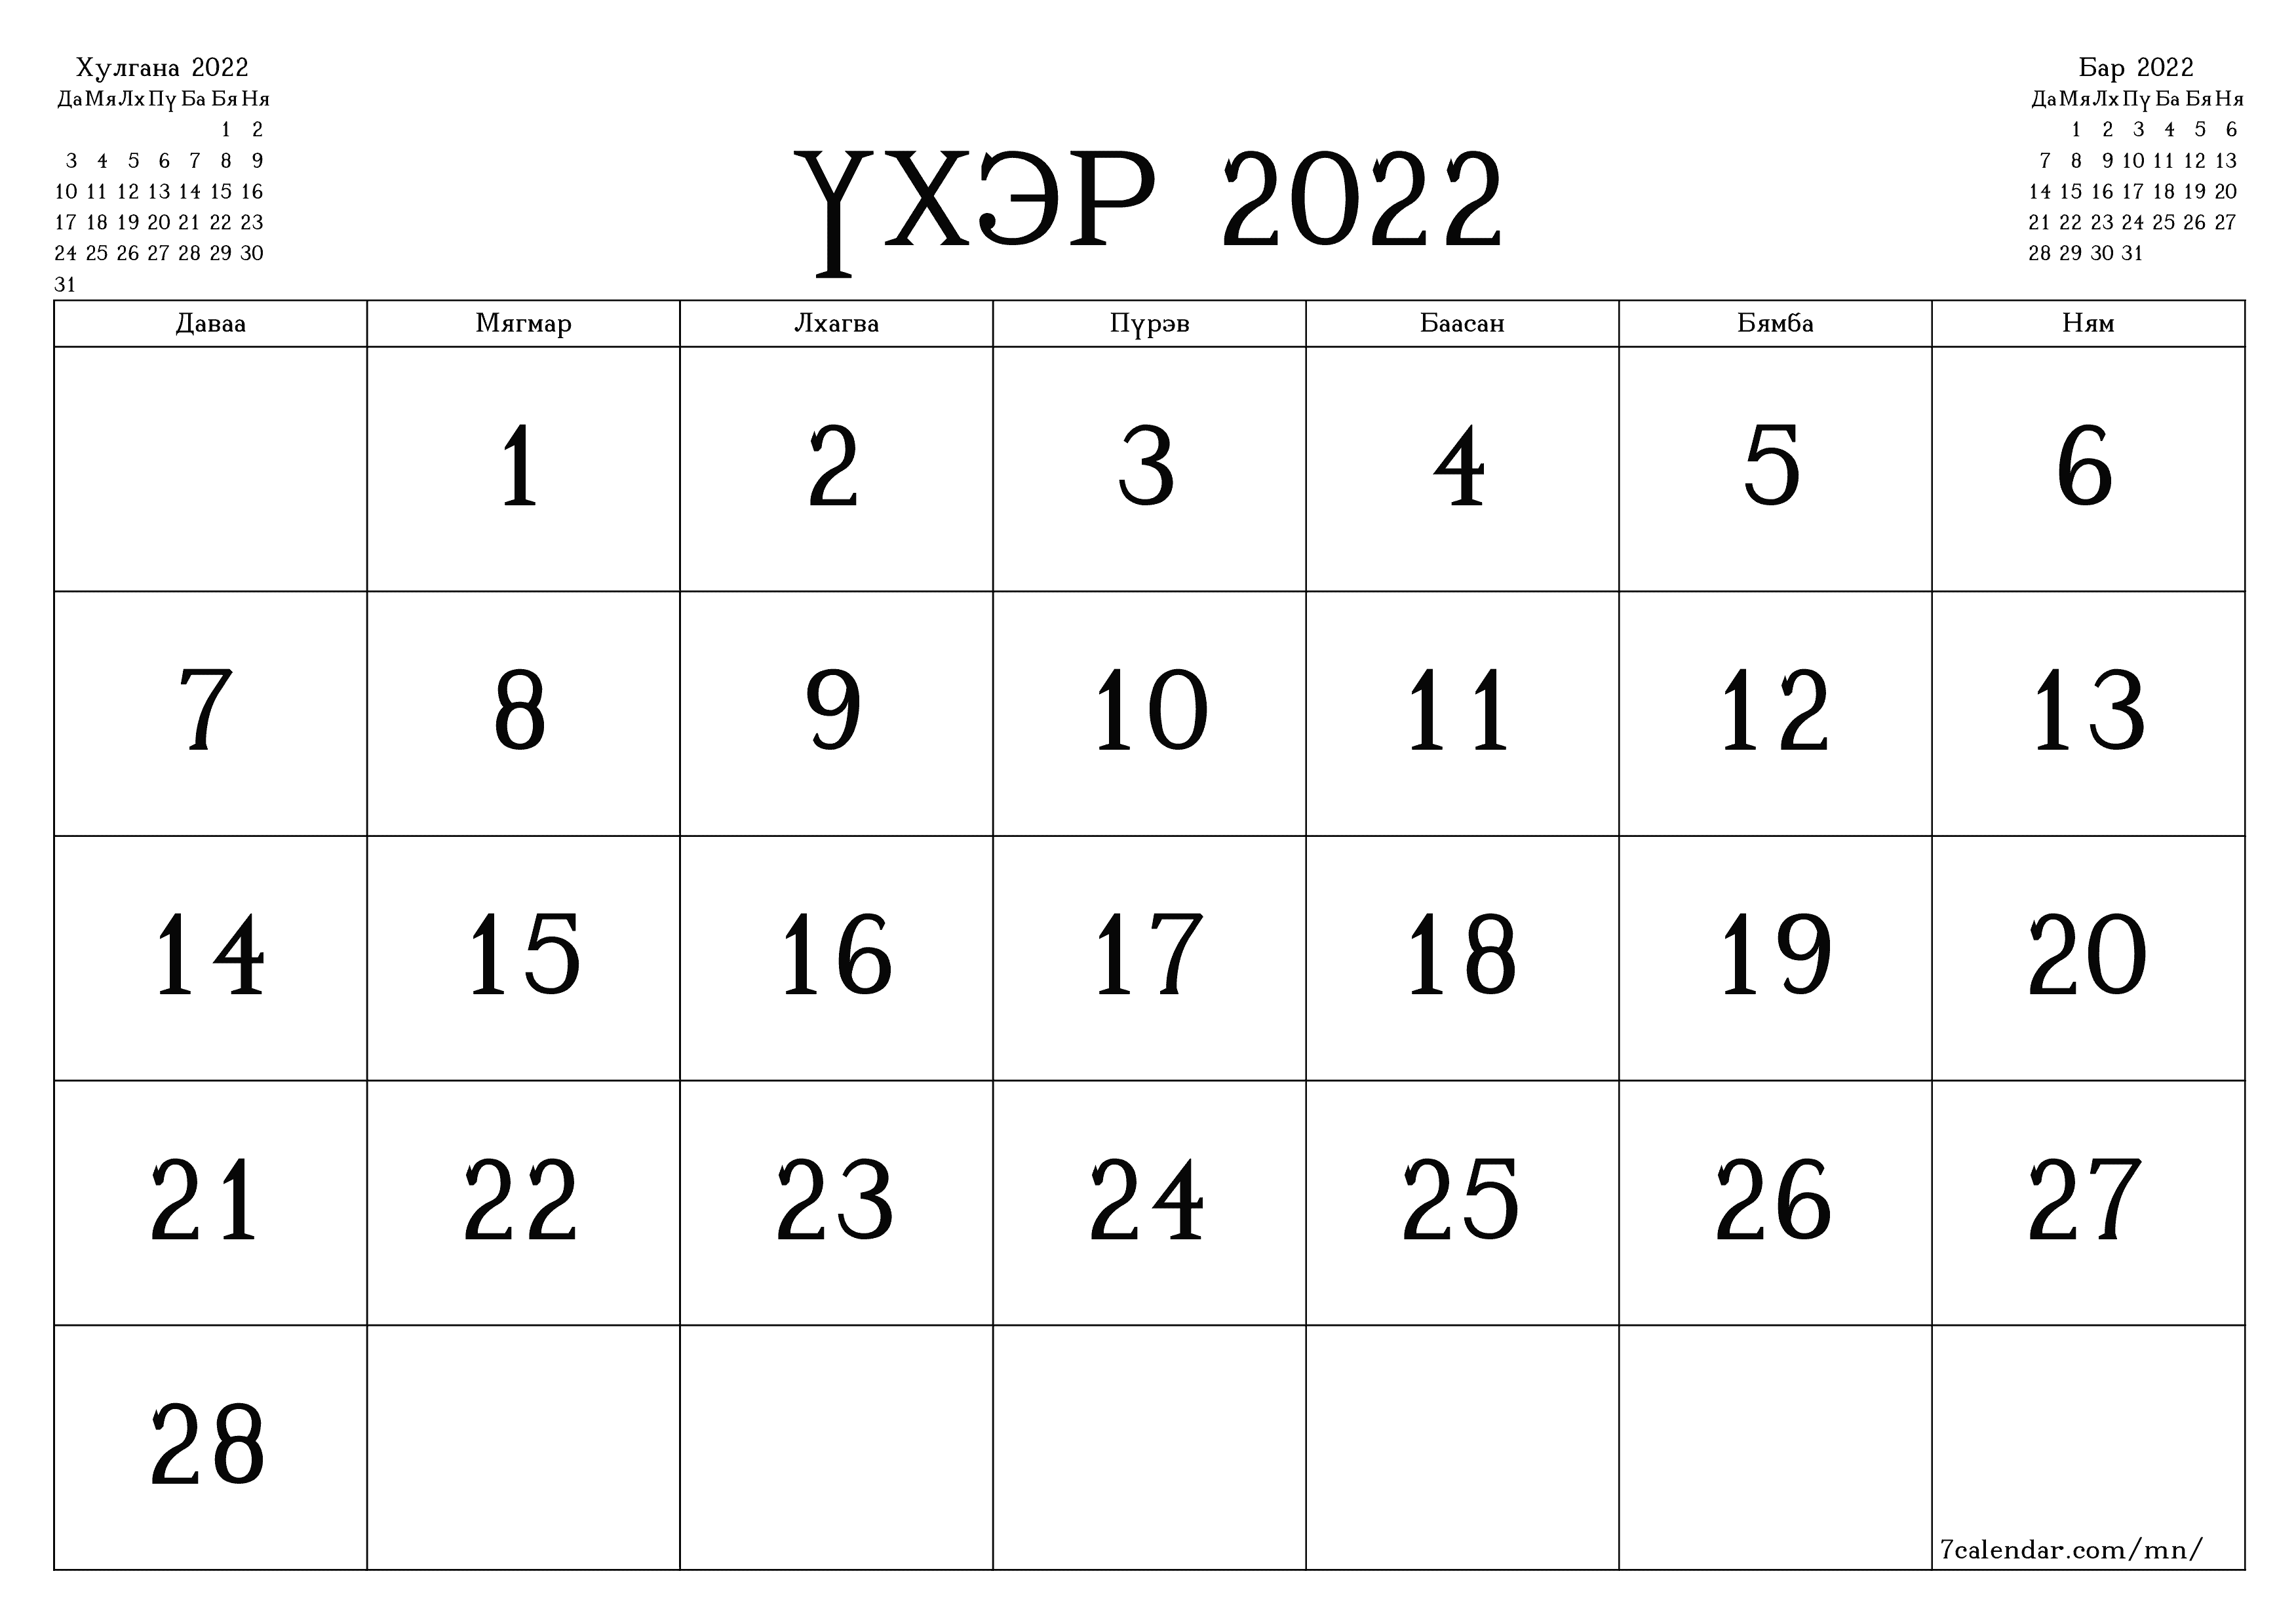 Үхэр 2022 сарын сар бүрийн төлөвлөгөөг тэмдэглэлтэй хоосон байлгаж, PDF хэлбэрээр хадгалж, хэвлэ PNG Mongolian